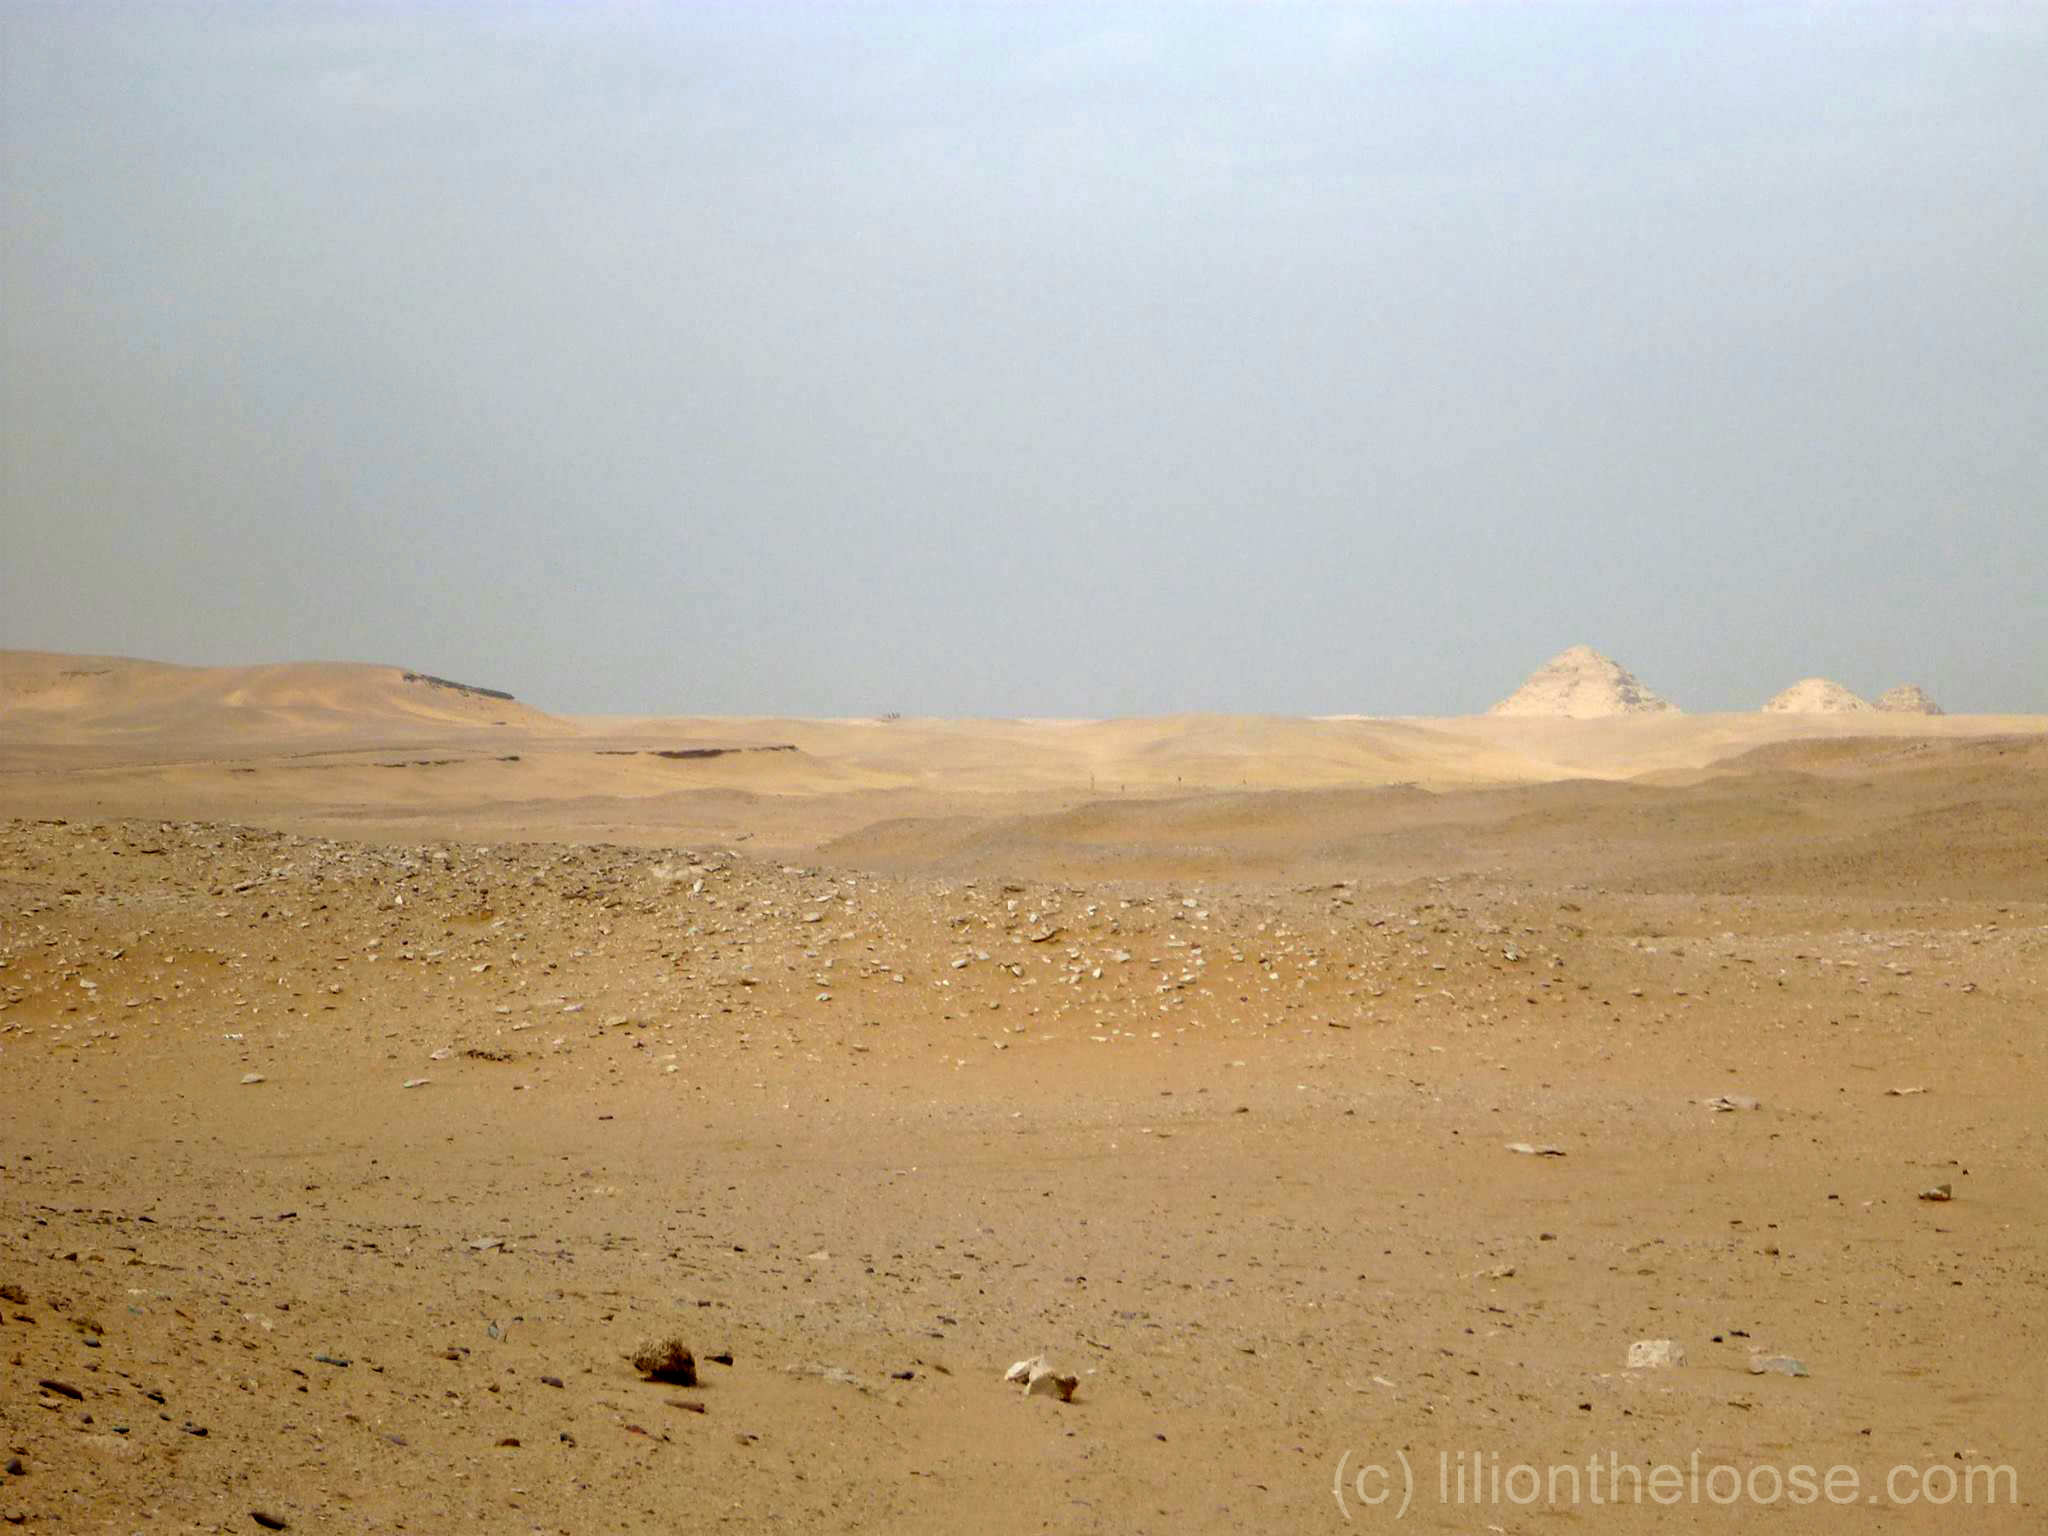 Walking alone in the desert near Saqqara.